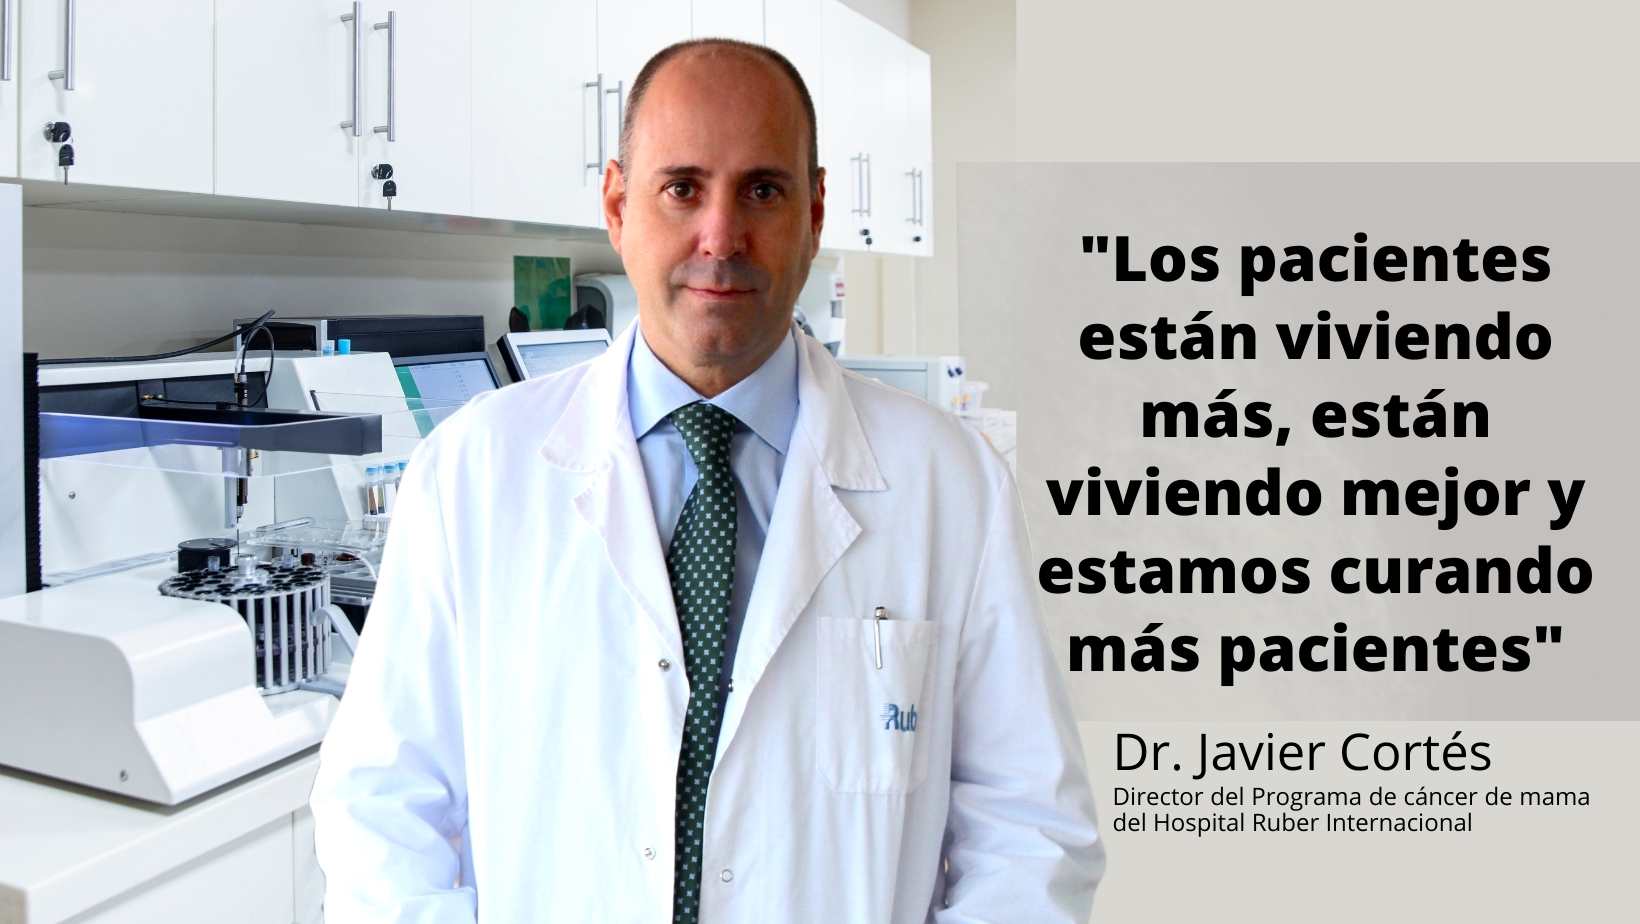 Tratamiento del cáncer de mama Dr javier Cortés Hospital Ruber Internacional